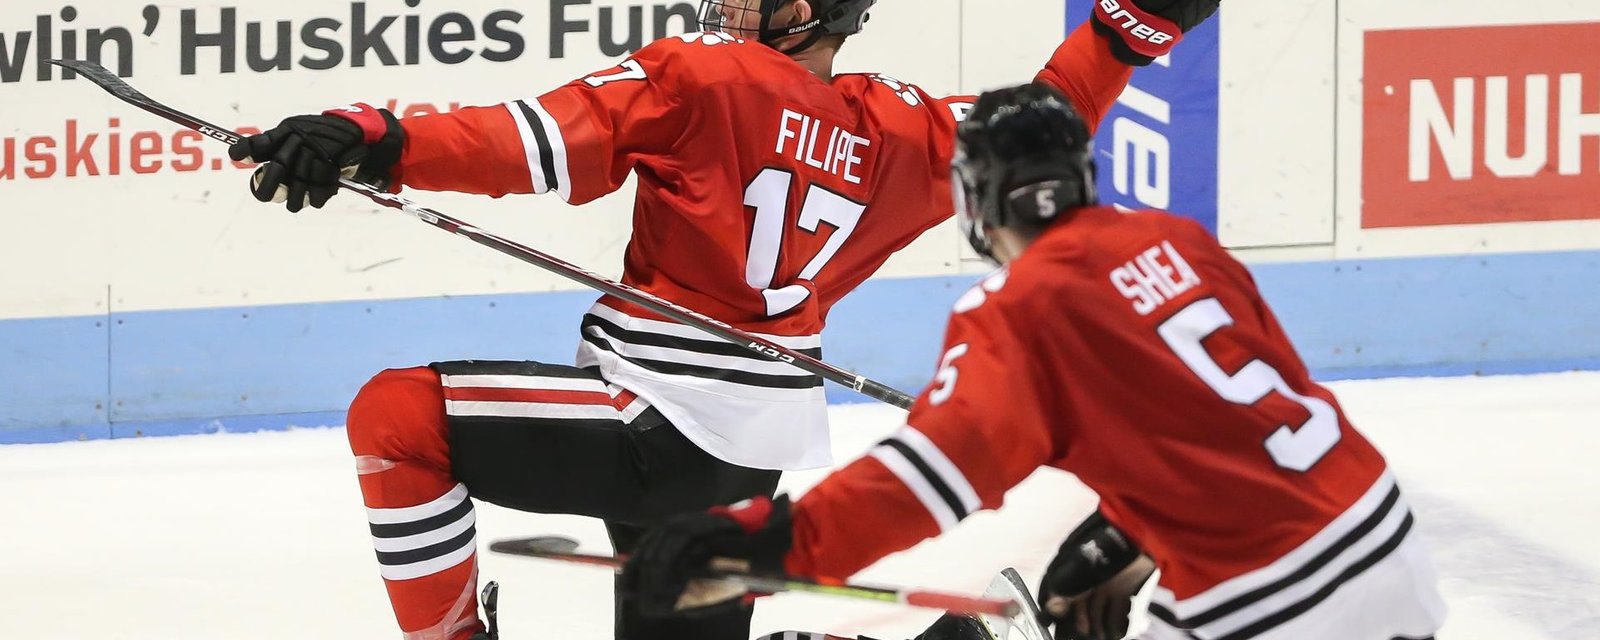 Bruins have signed former Hurricanes draft pick Matt Filipe.